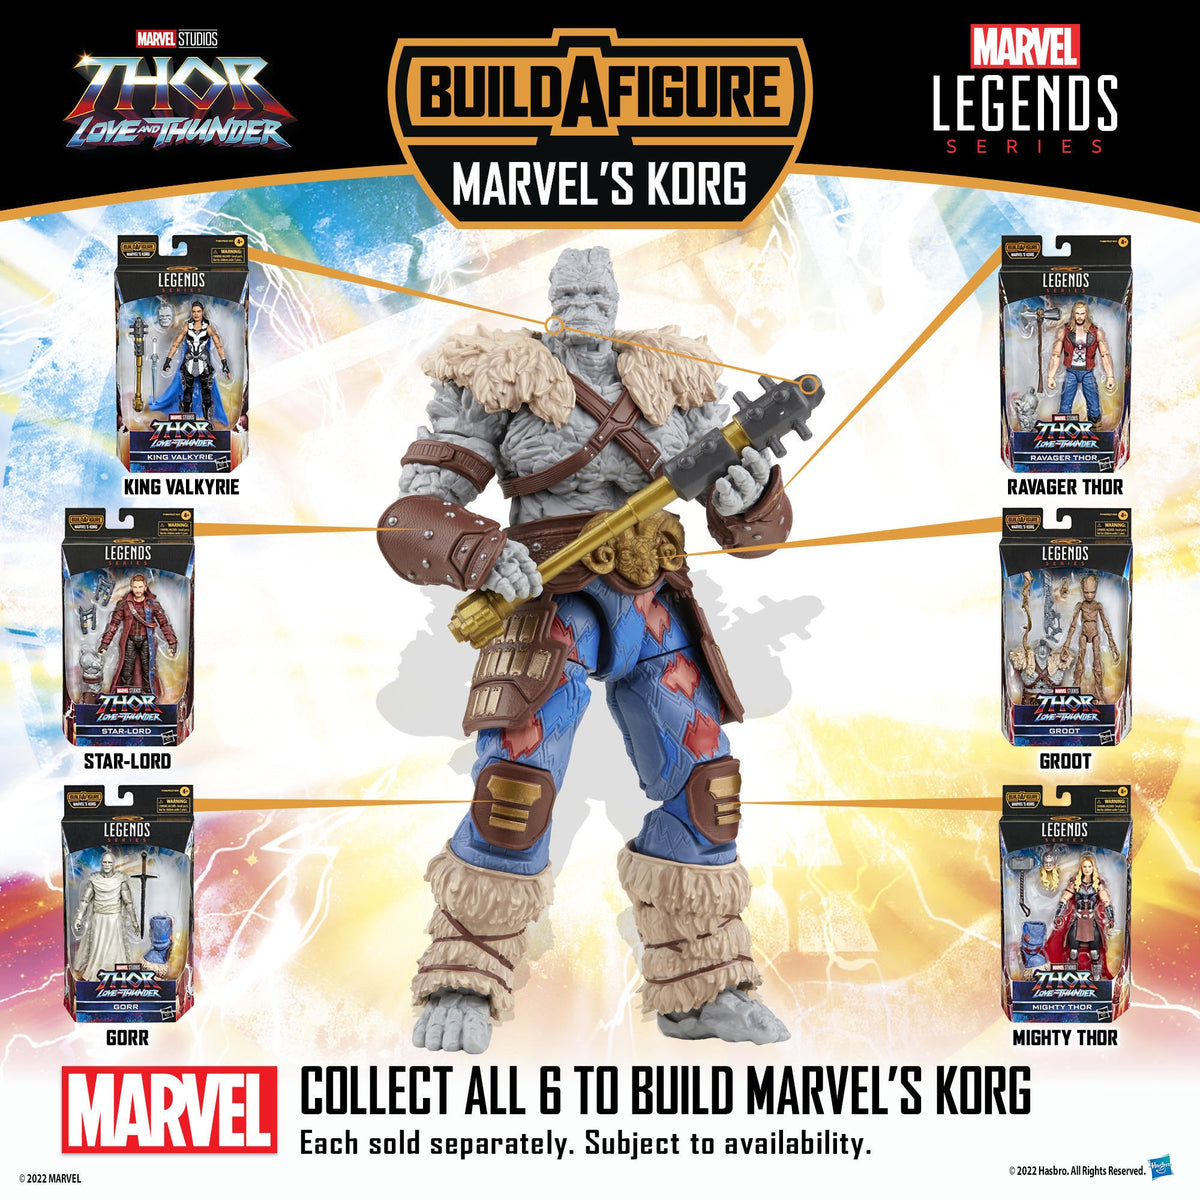 Achetez Figurine Marvel Legends Thor Lt STAR-LORD Af